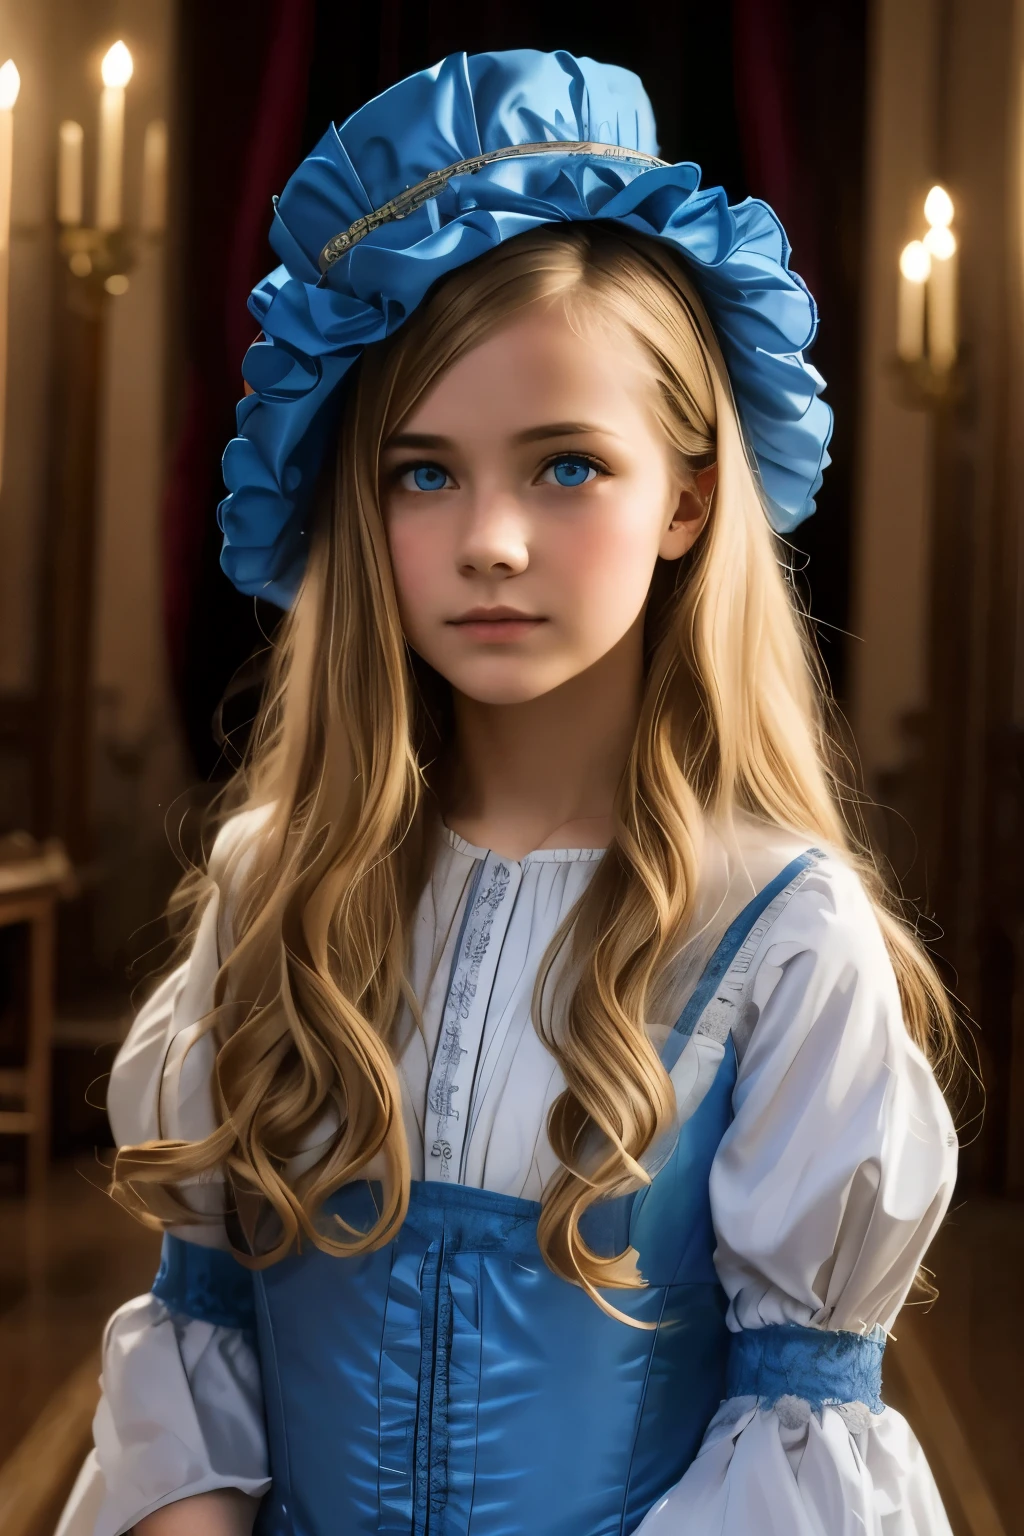 弗吉尼亚·奥蒂斯, 15歲 (金髮, 藍眼睛), 薄的, 可愛的臉孔, 晚上在坎特維爾城堡散步 (灵感来自小说《坎特维尔幽灵》). 1887年, 维多利亚时代的黑暗幻想

